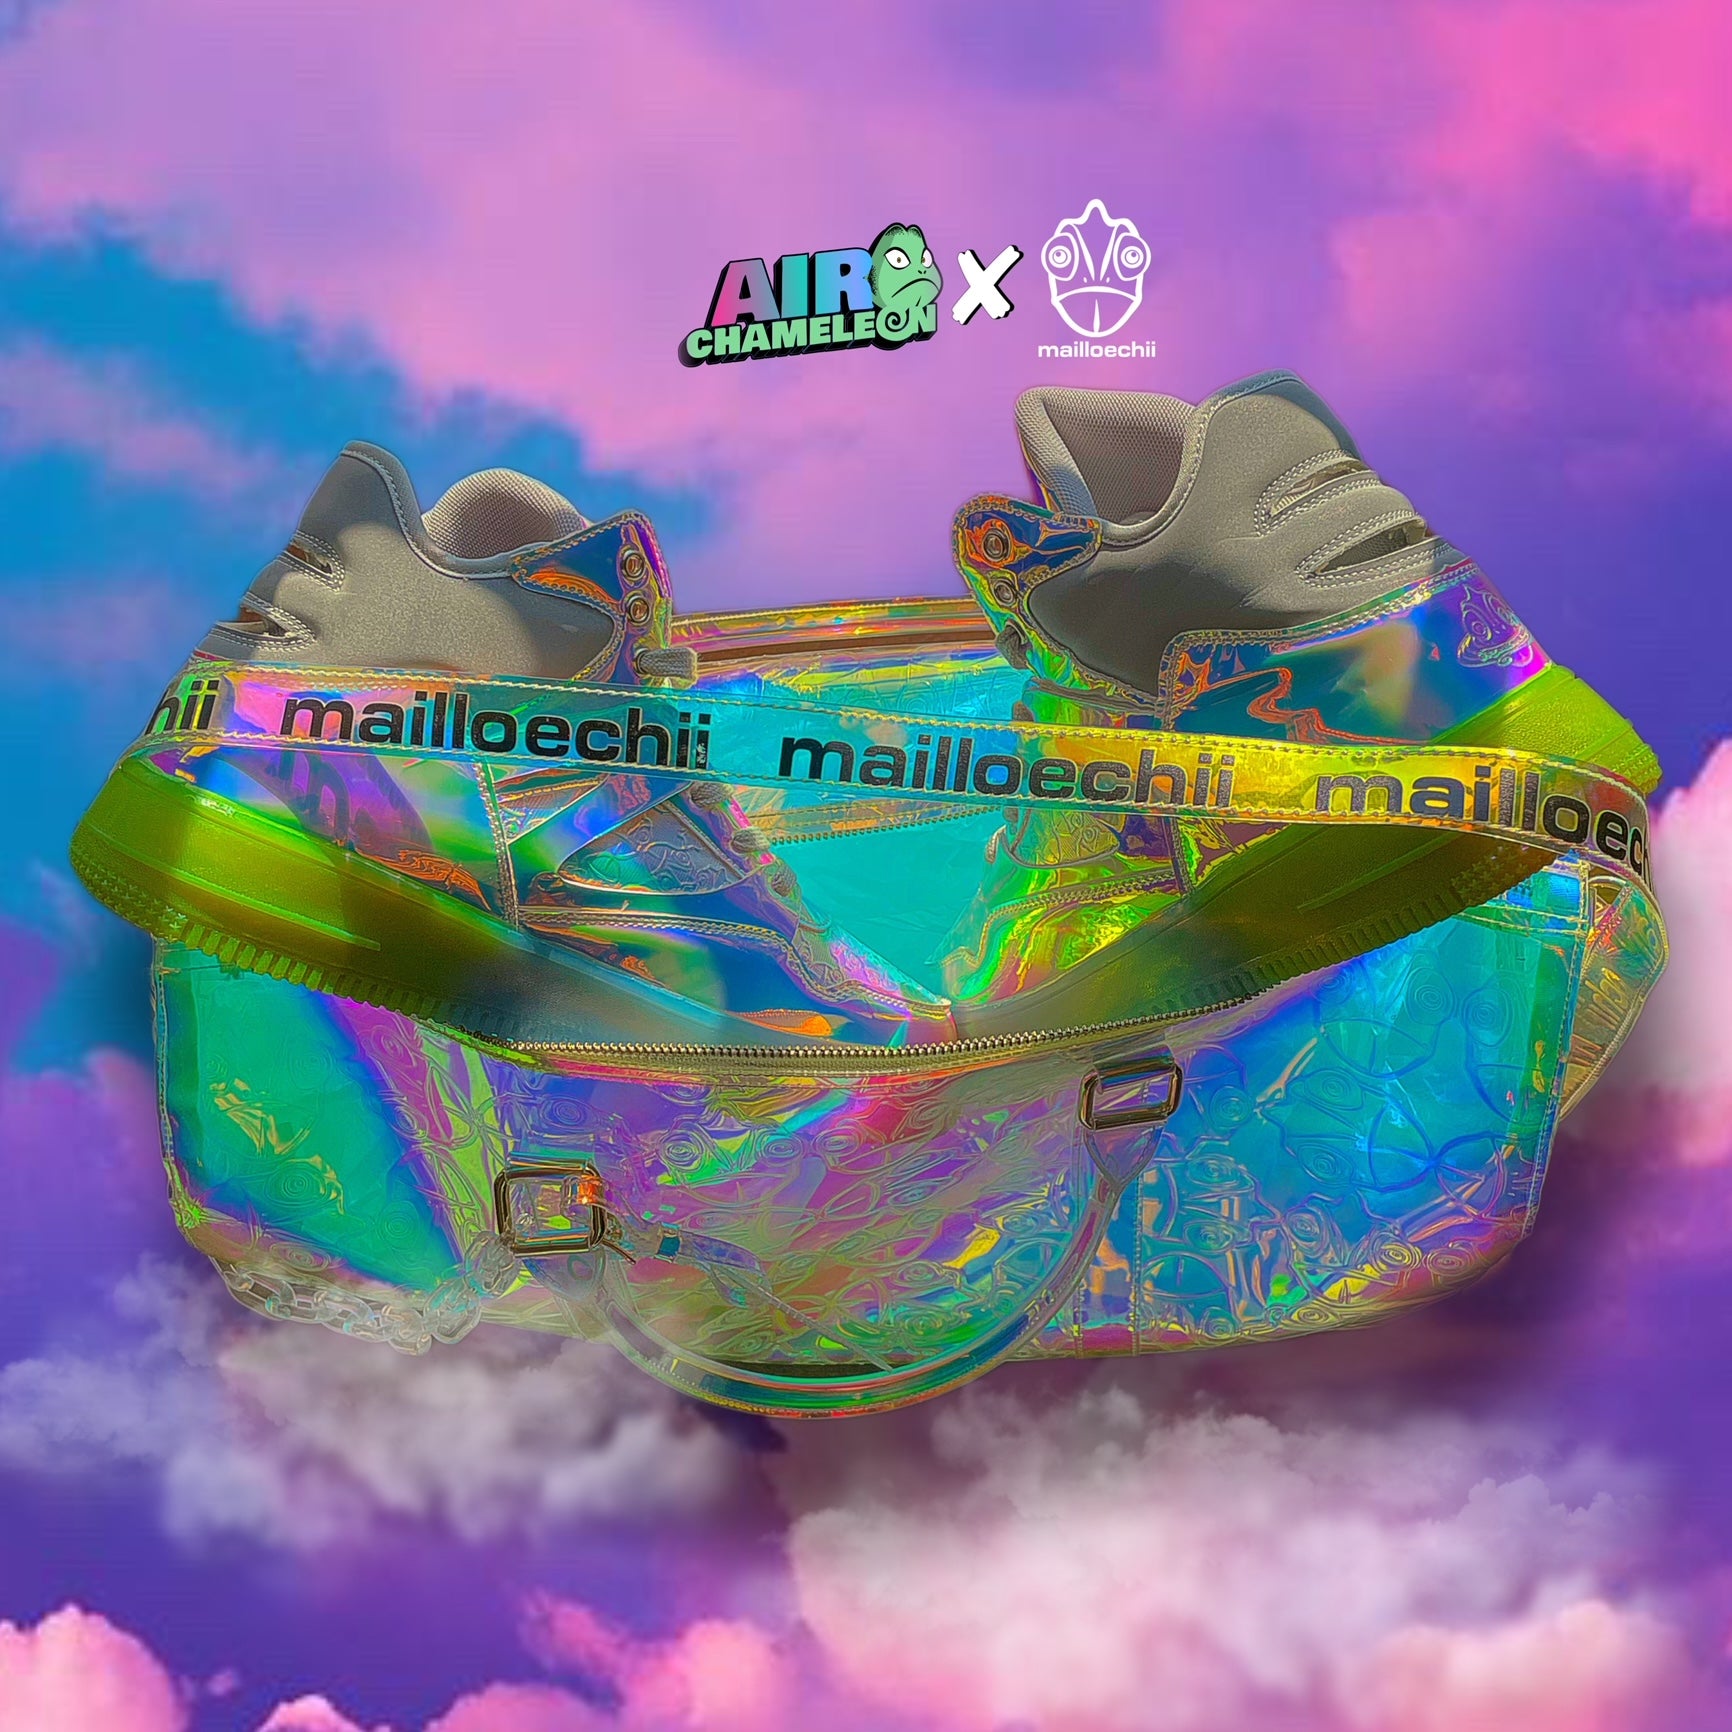 Air Chameleon x Mailloechii Iridescent Duffel Bag